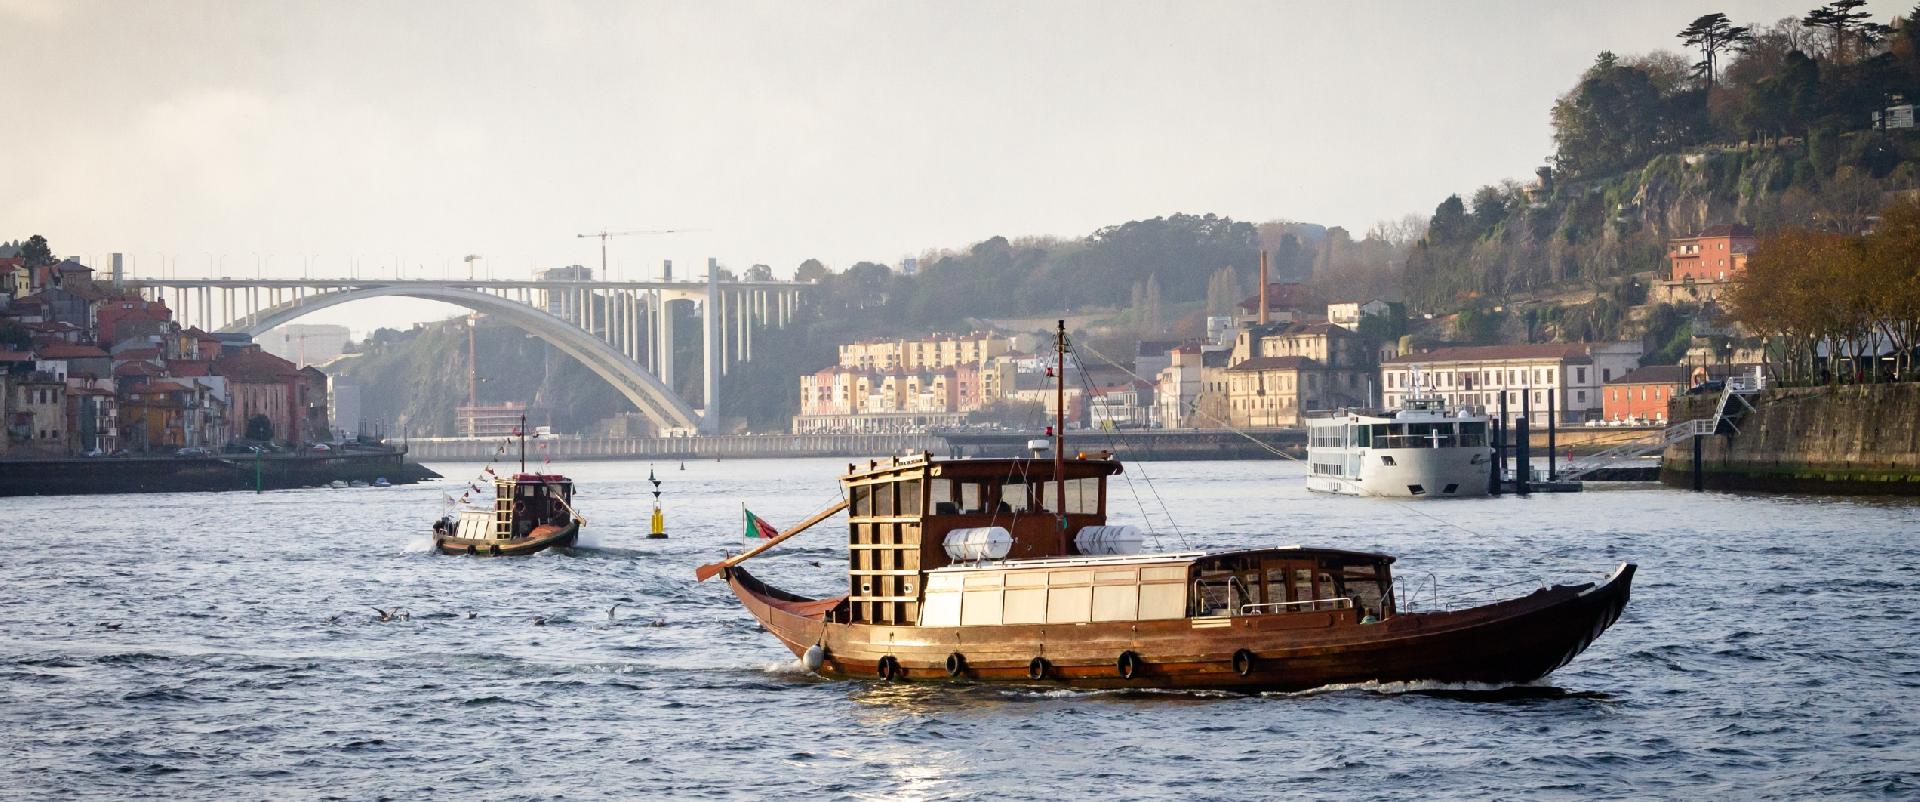 Cruzeiros do Douro preÃ§os: realize um cruzeiro das Pontes por apenas 15â‚¬ por pessoa